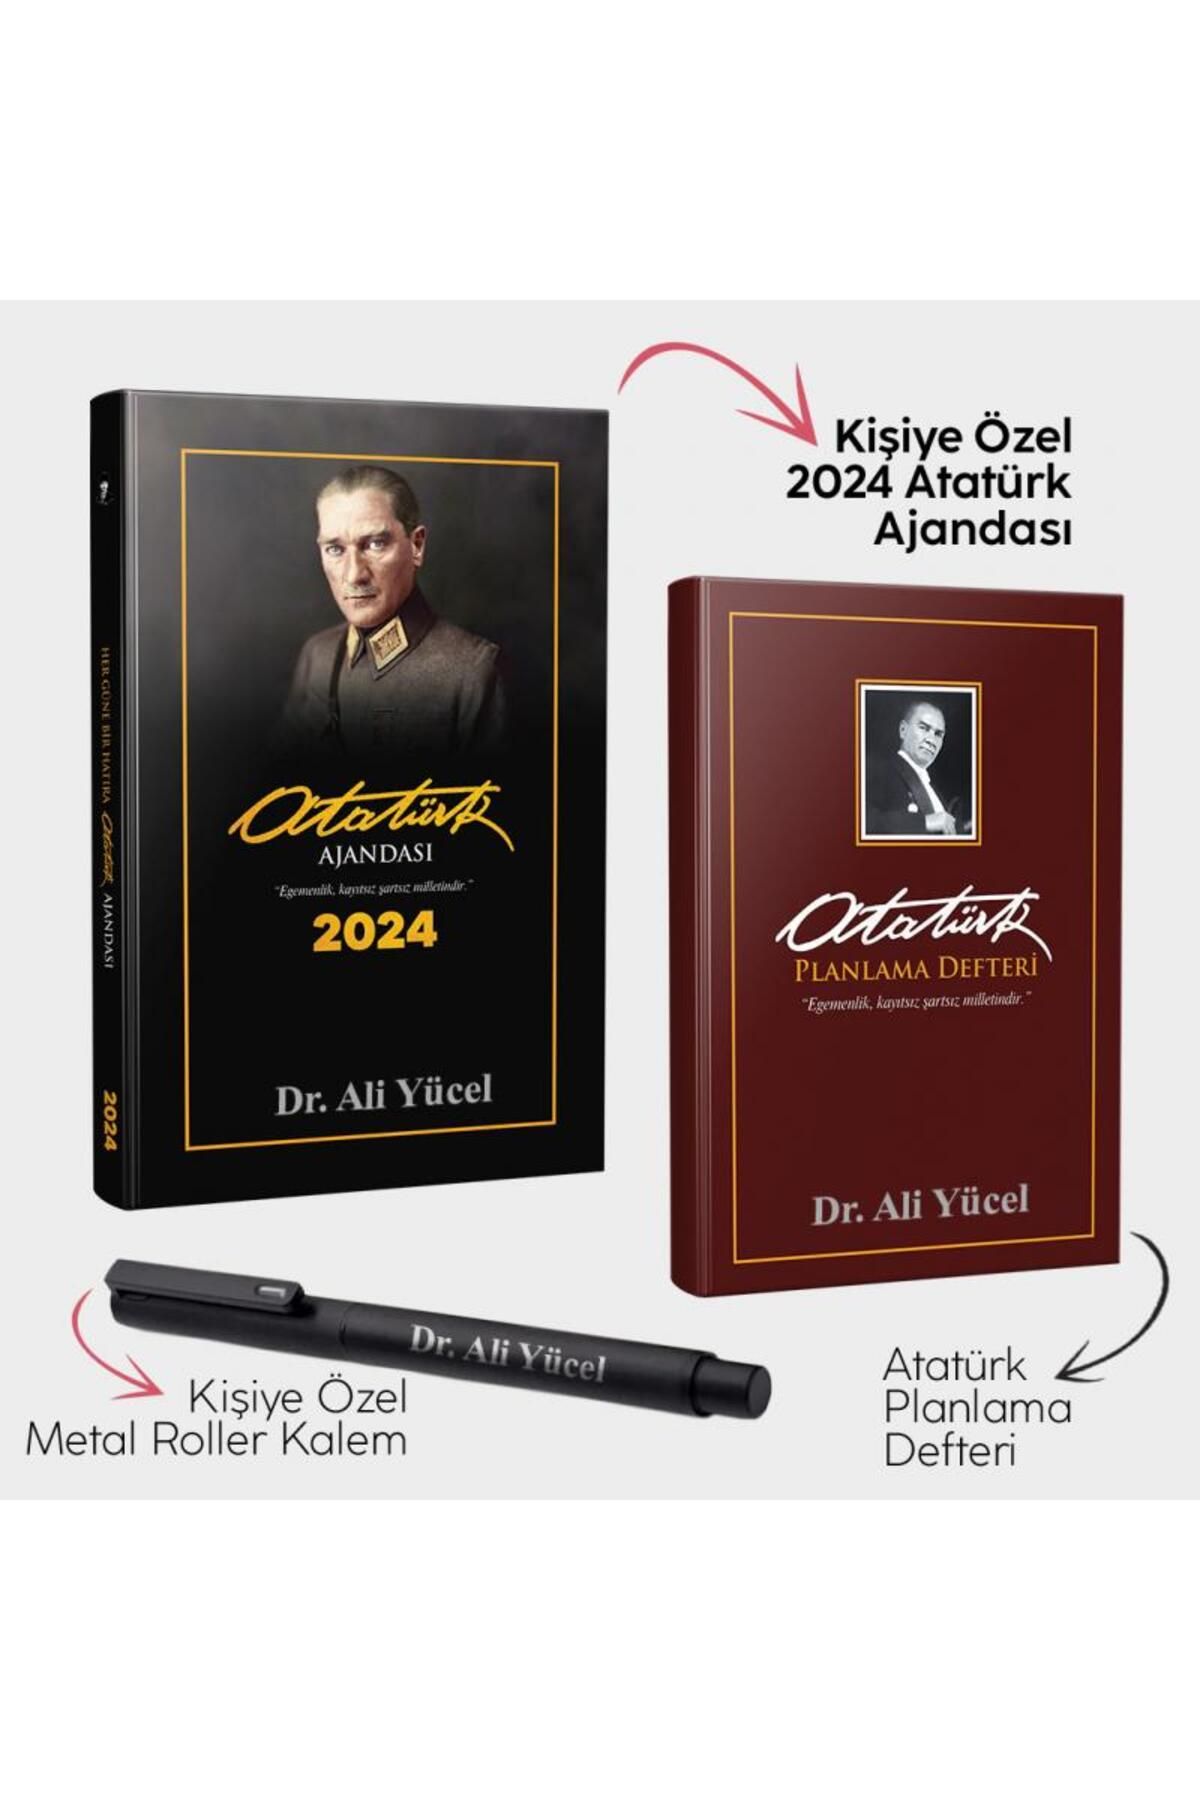 Halk Kitabevi Kişiye Özel - Önder 2024 Atatürk Ajandası - Gazi Paşa Bordo Planlama Defteri ve Metal Roller Kalem